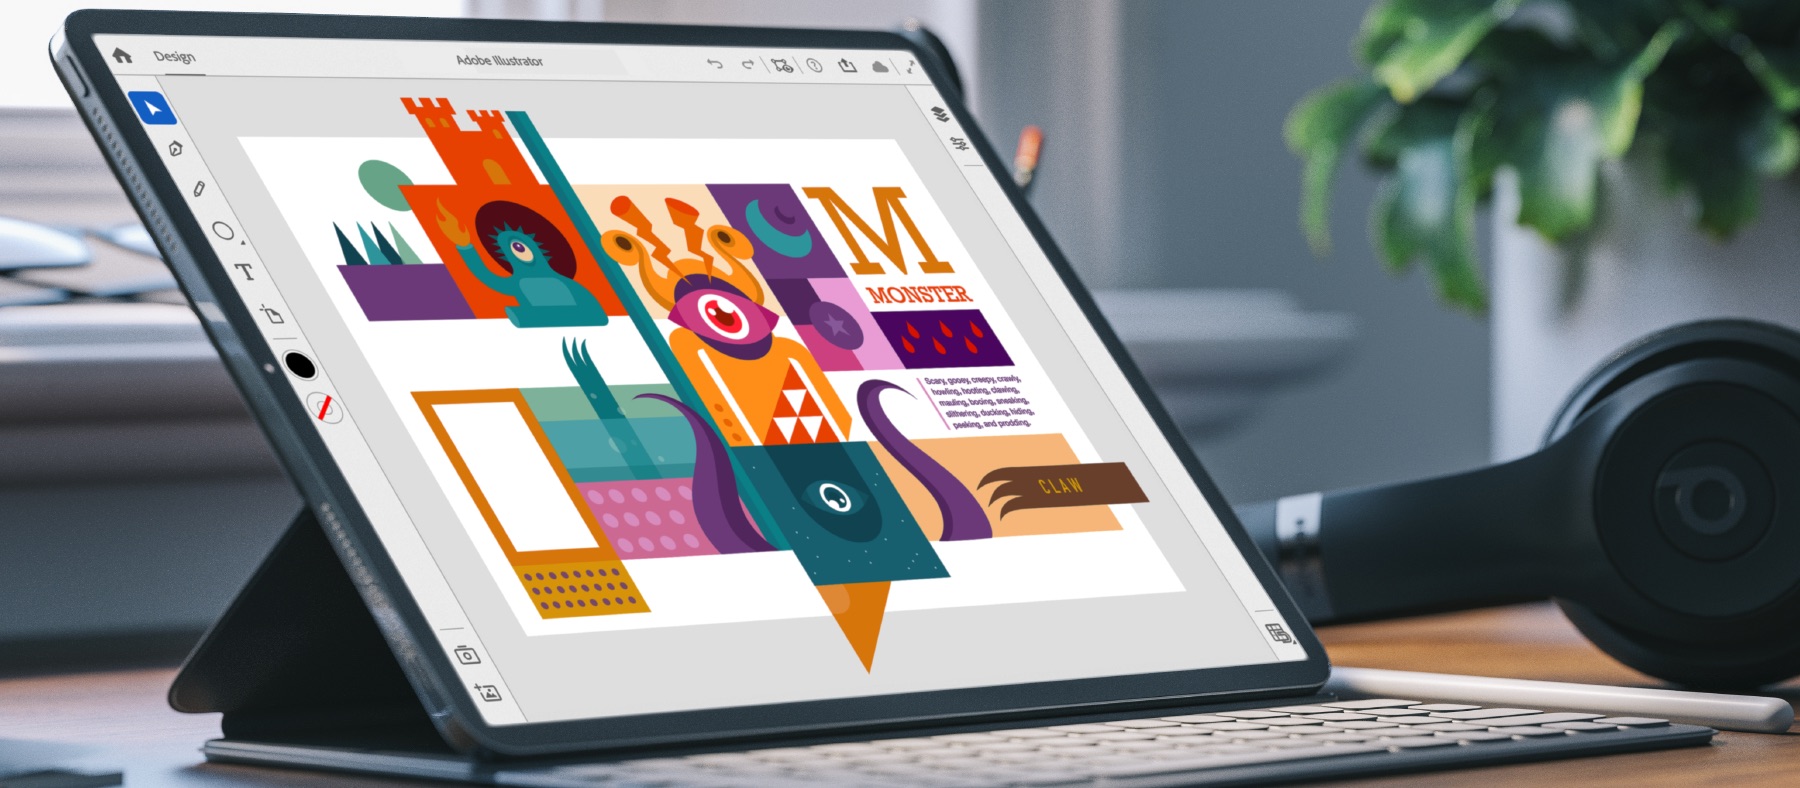 Adobe Illustrator, 2020 yılında iPad'e geliyor